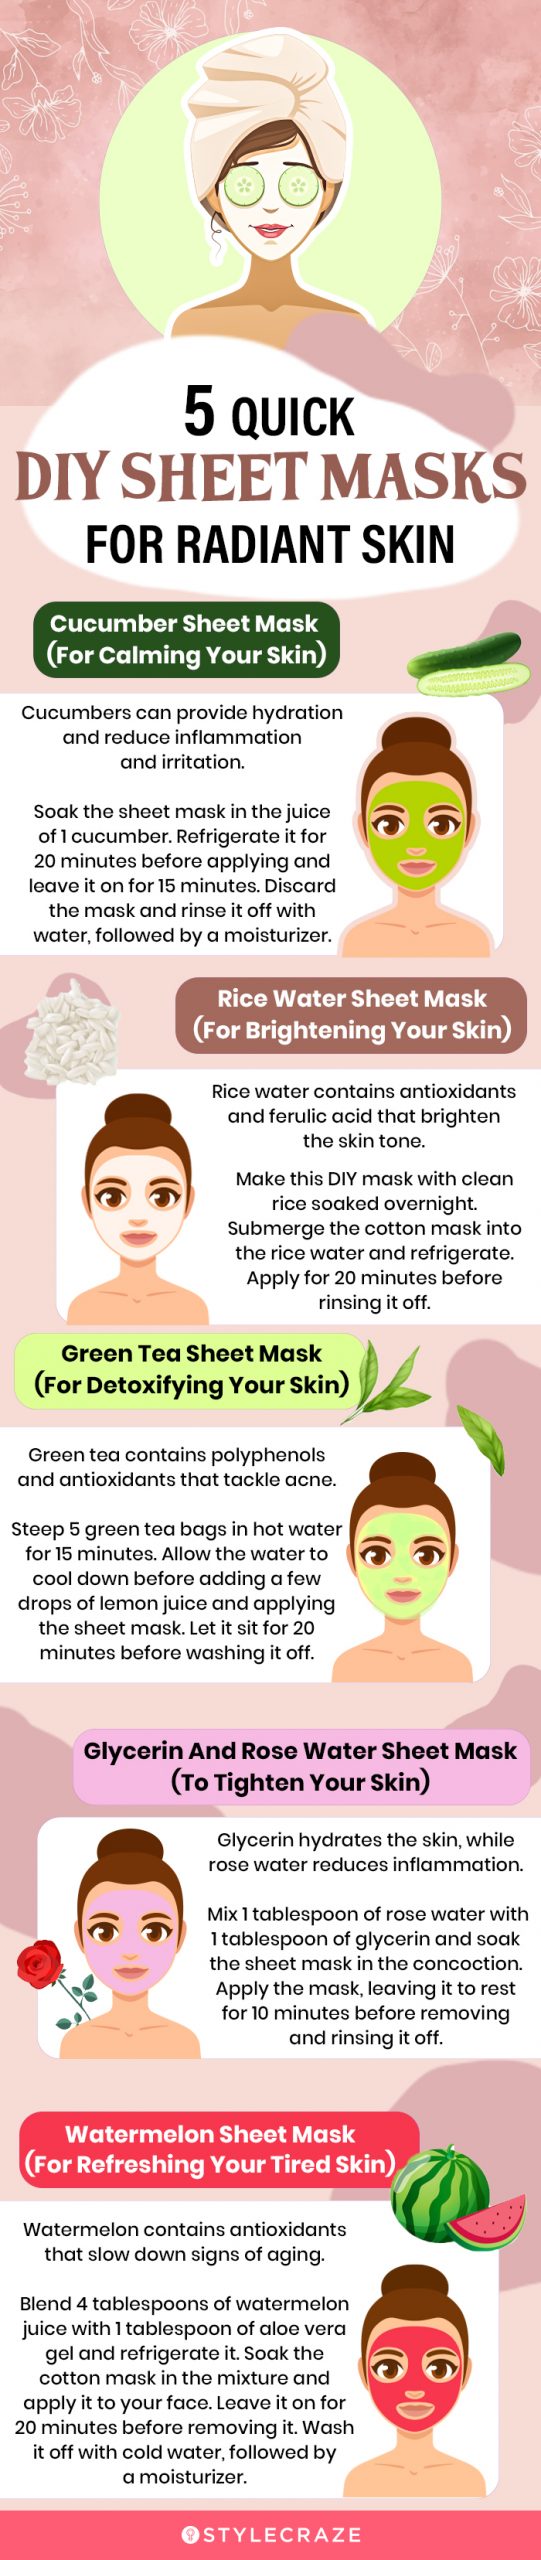 5 quick diy sheet masks for radiant skin [infographic]